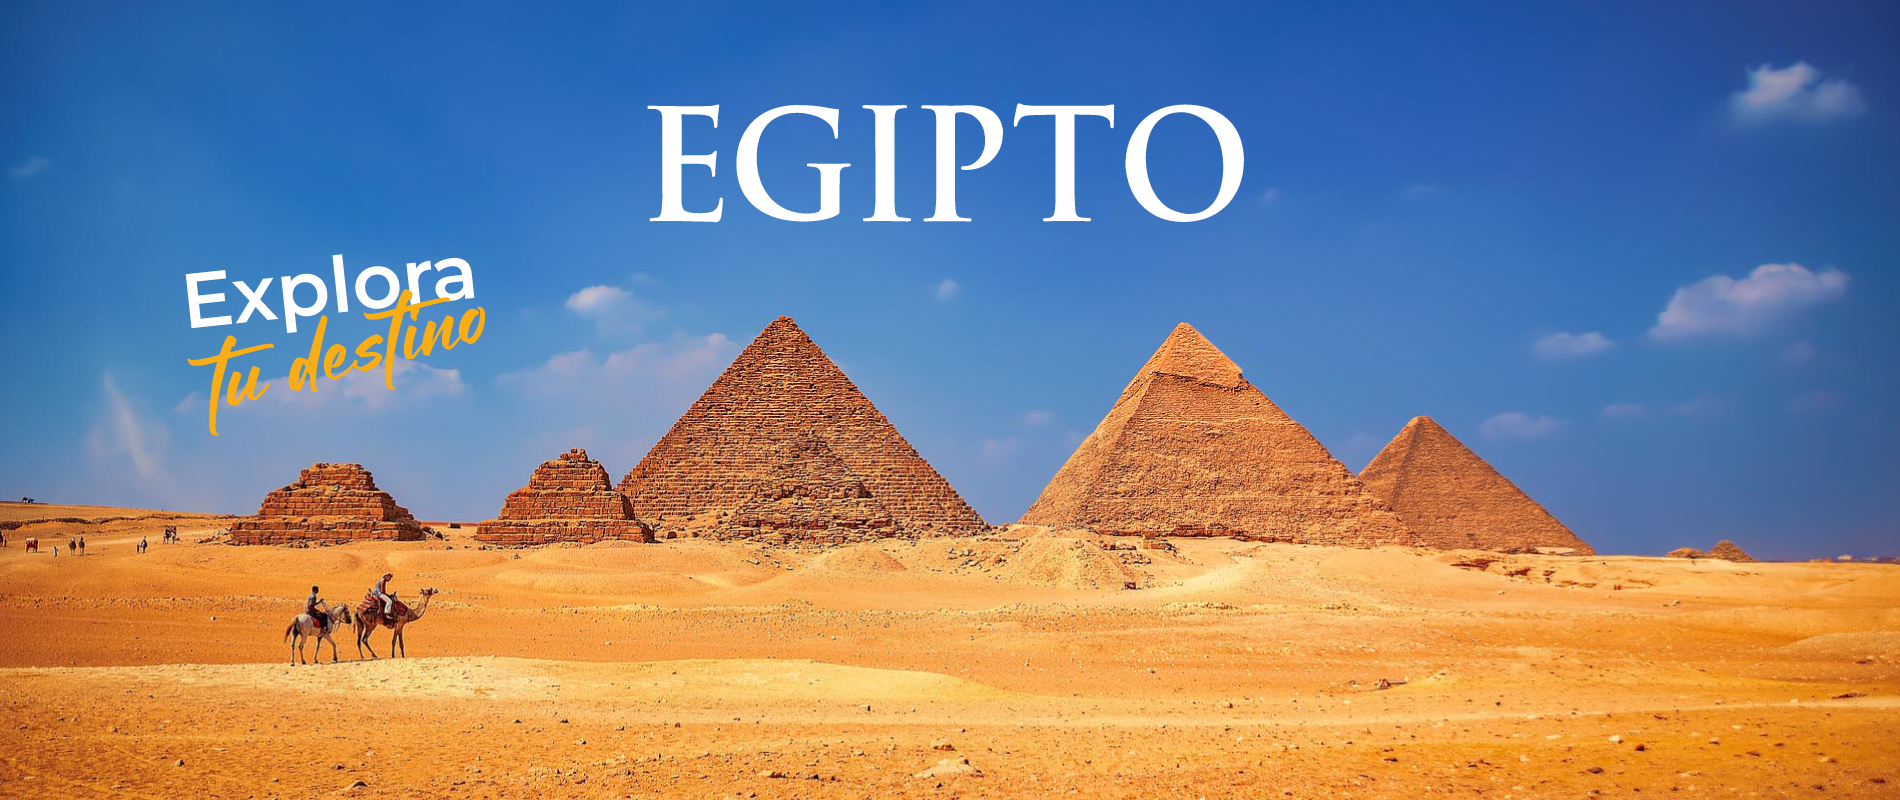 DESTINOS_EGIPTO_Banner